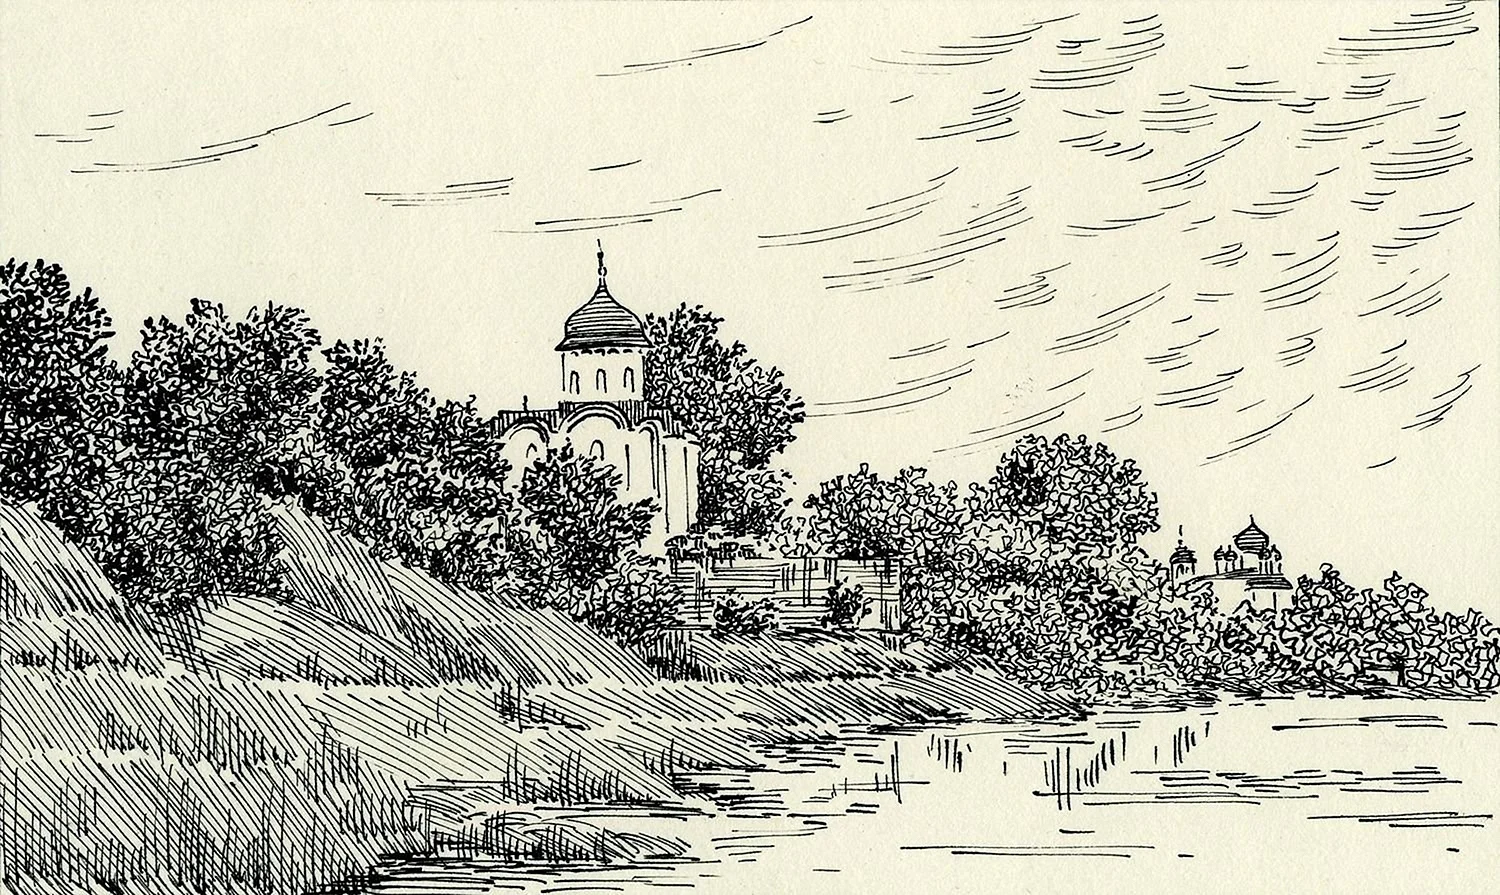 Литография рисунка Иванова Снетогорский монастырь 1837